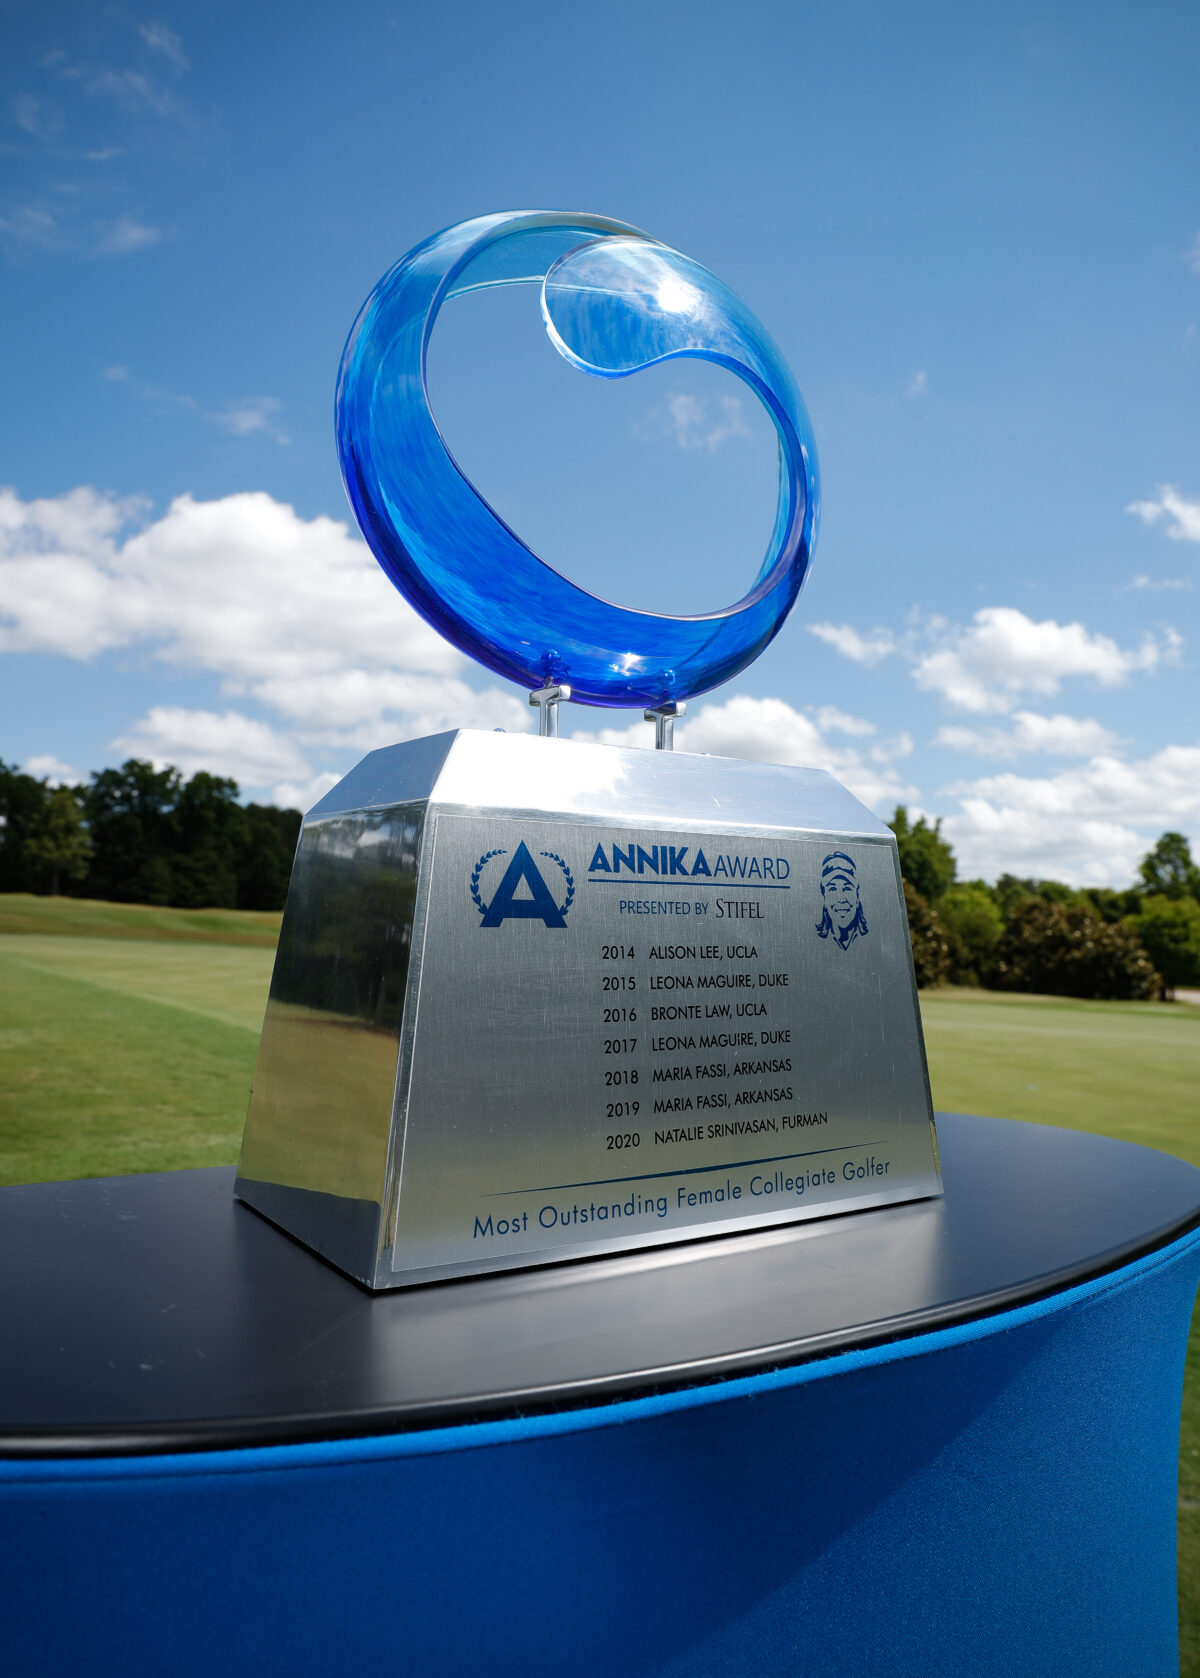 ANNIKA Award: Final watch list for 2021-22 women’s college golf season